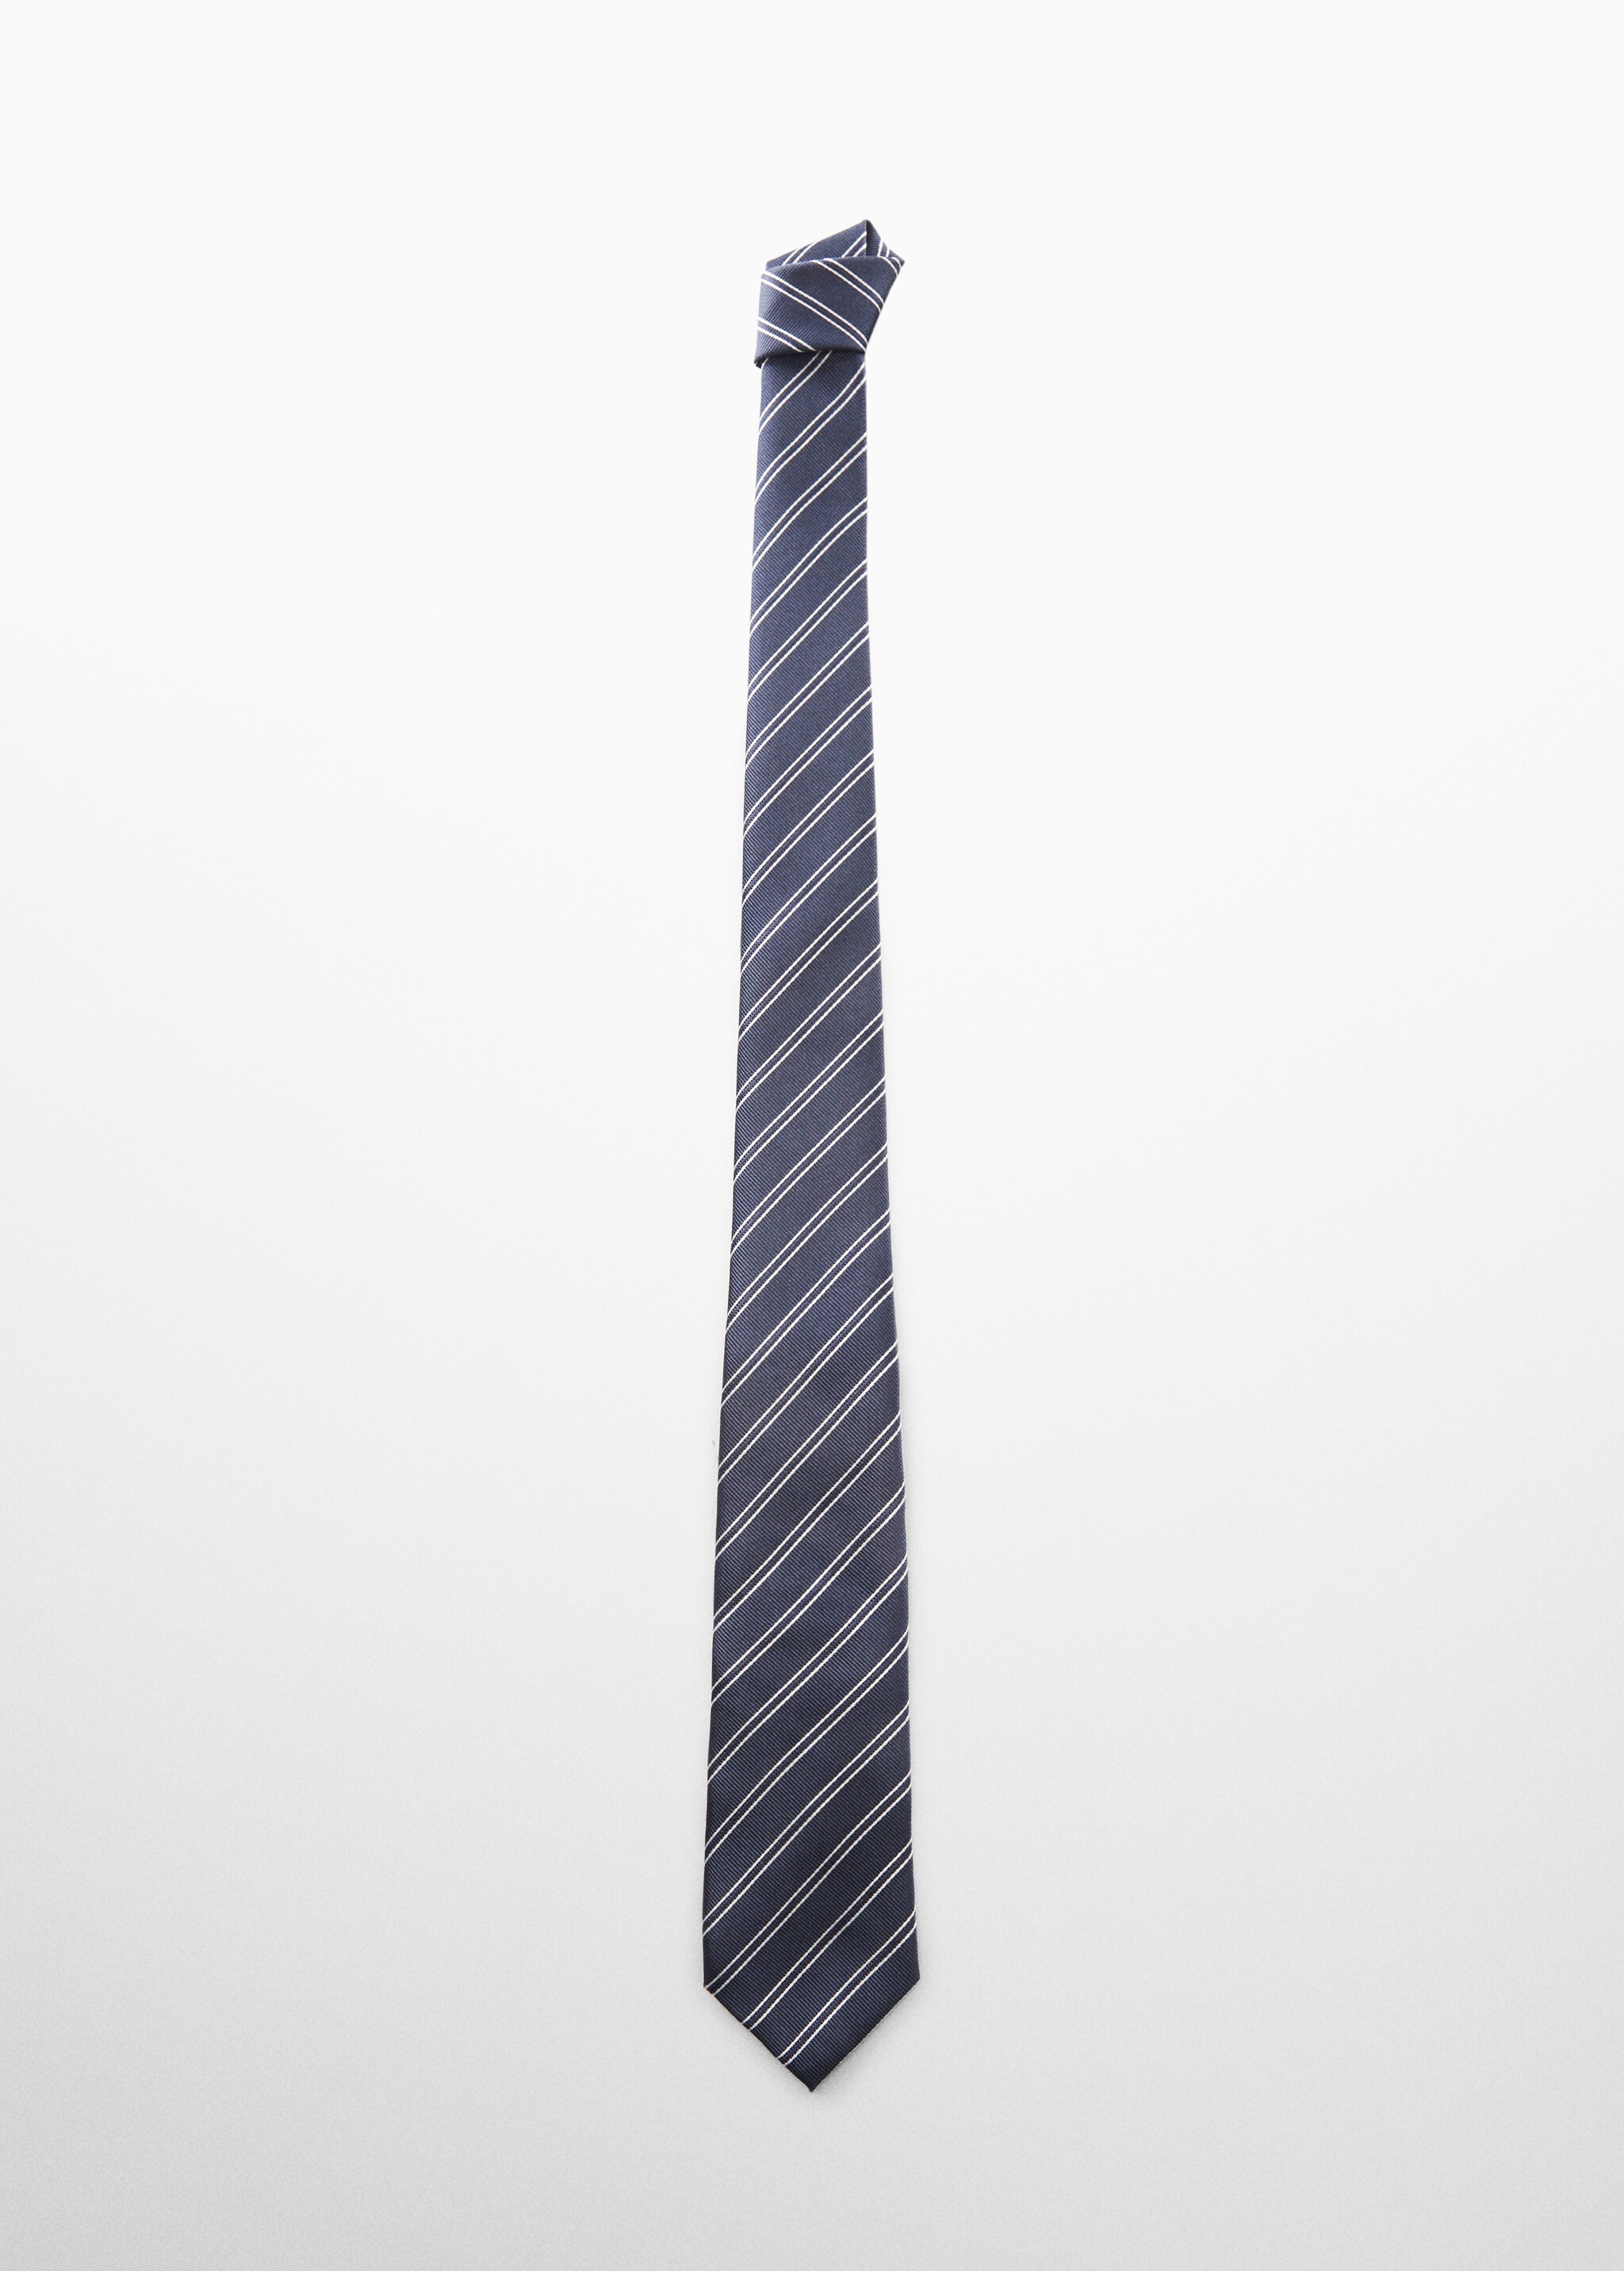 Cravatta righe antimacchia - Articolo senza modello